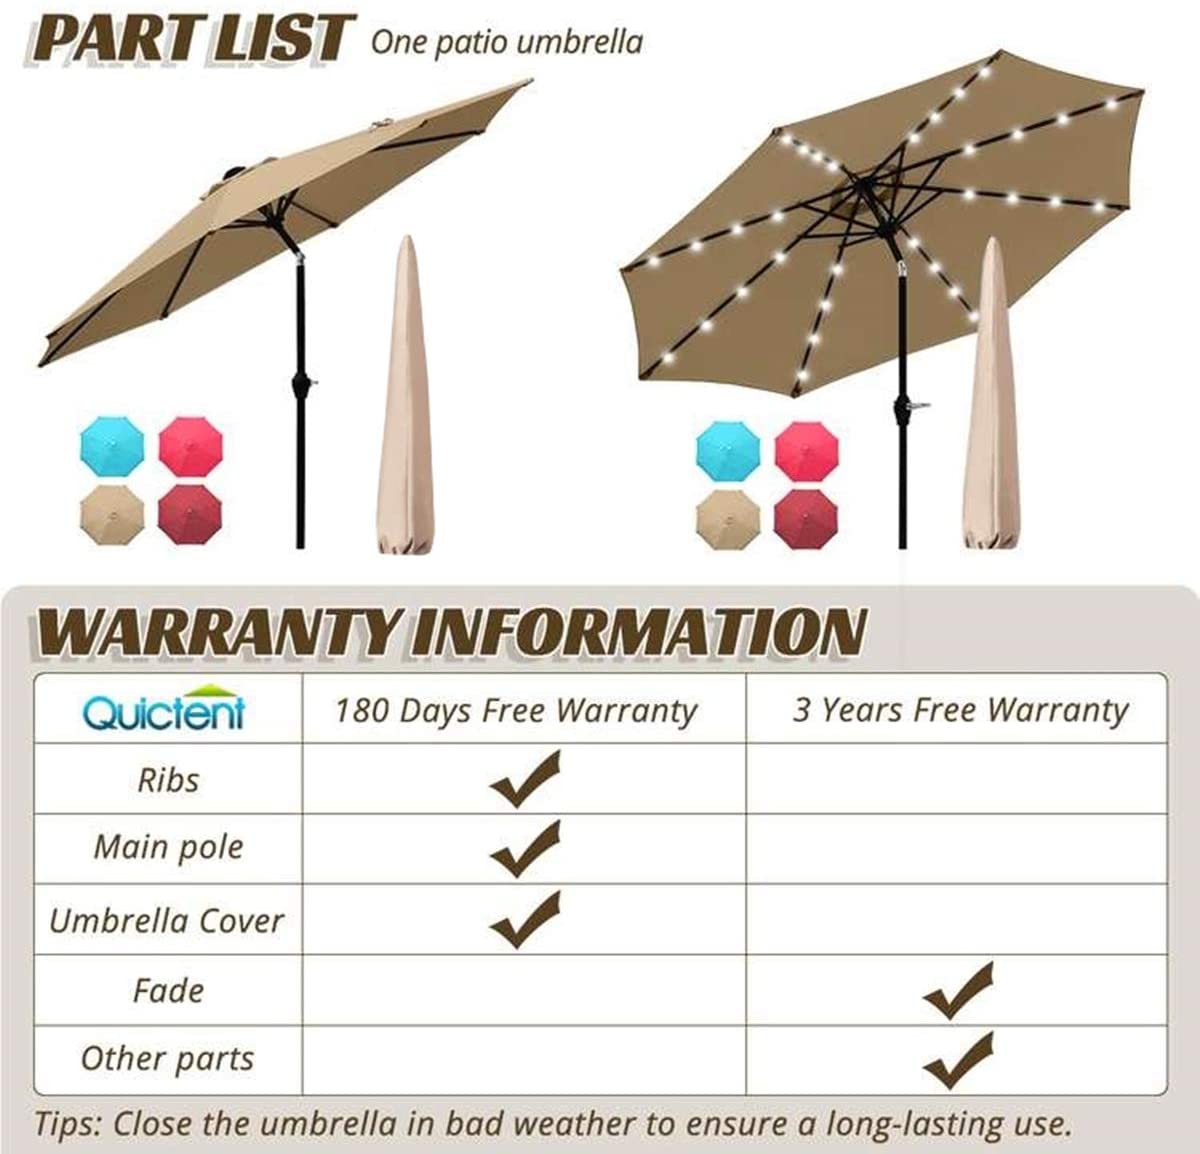 Patio umbrella Warranty#color_tan